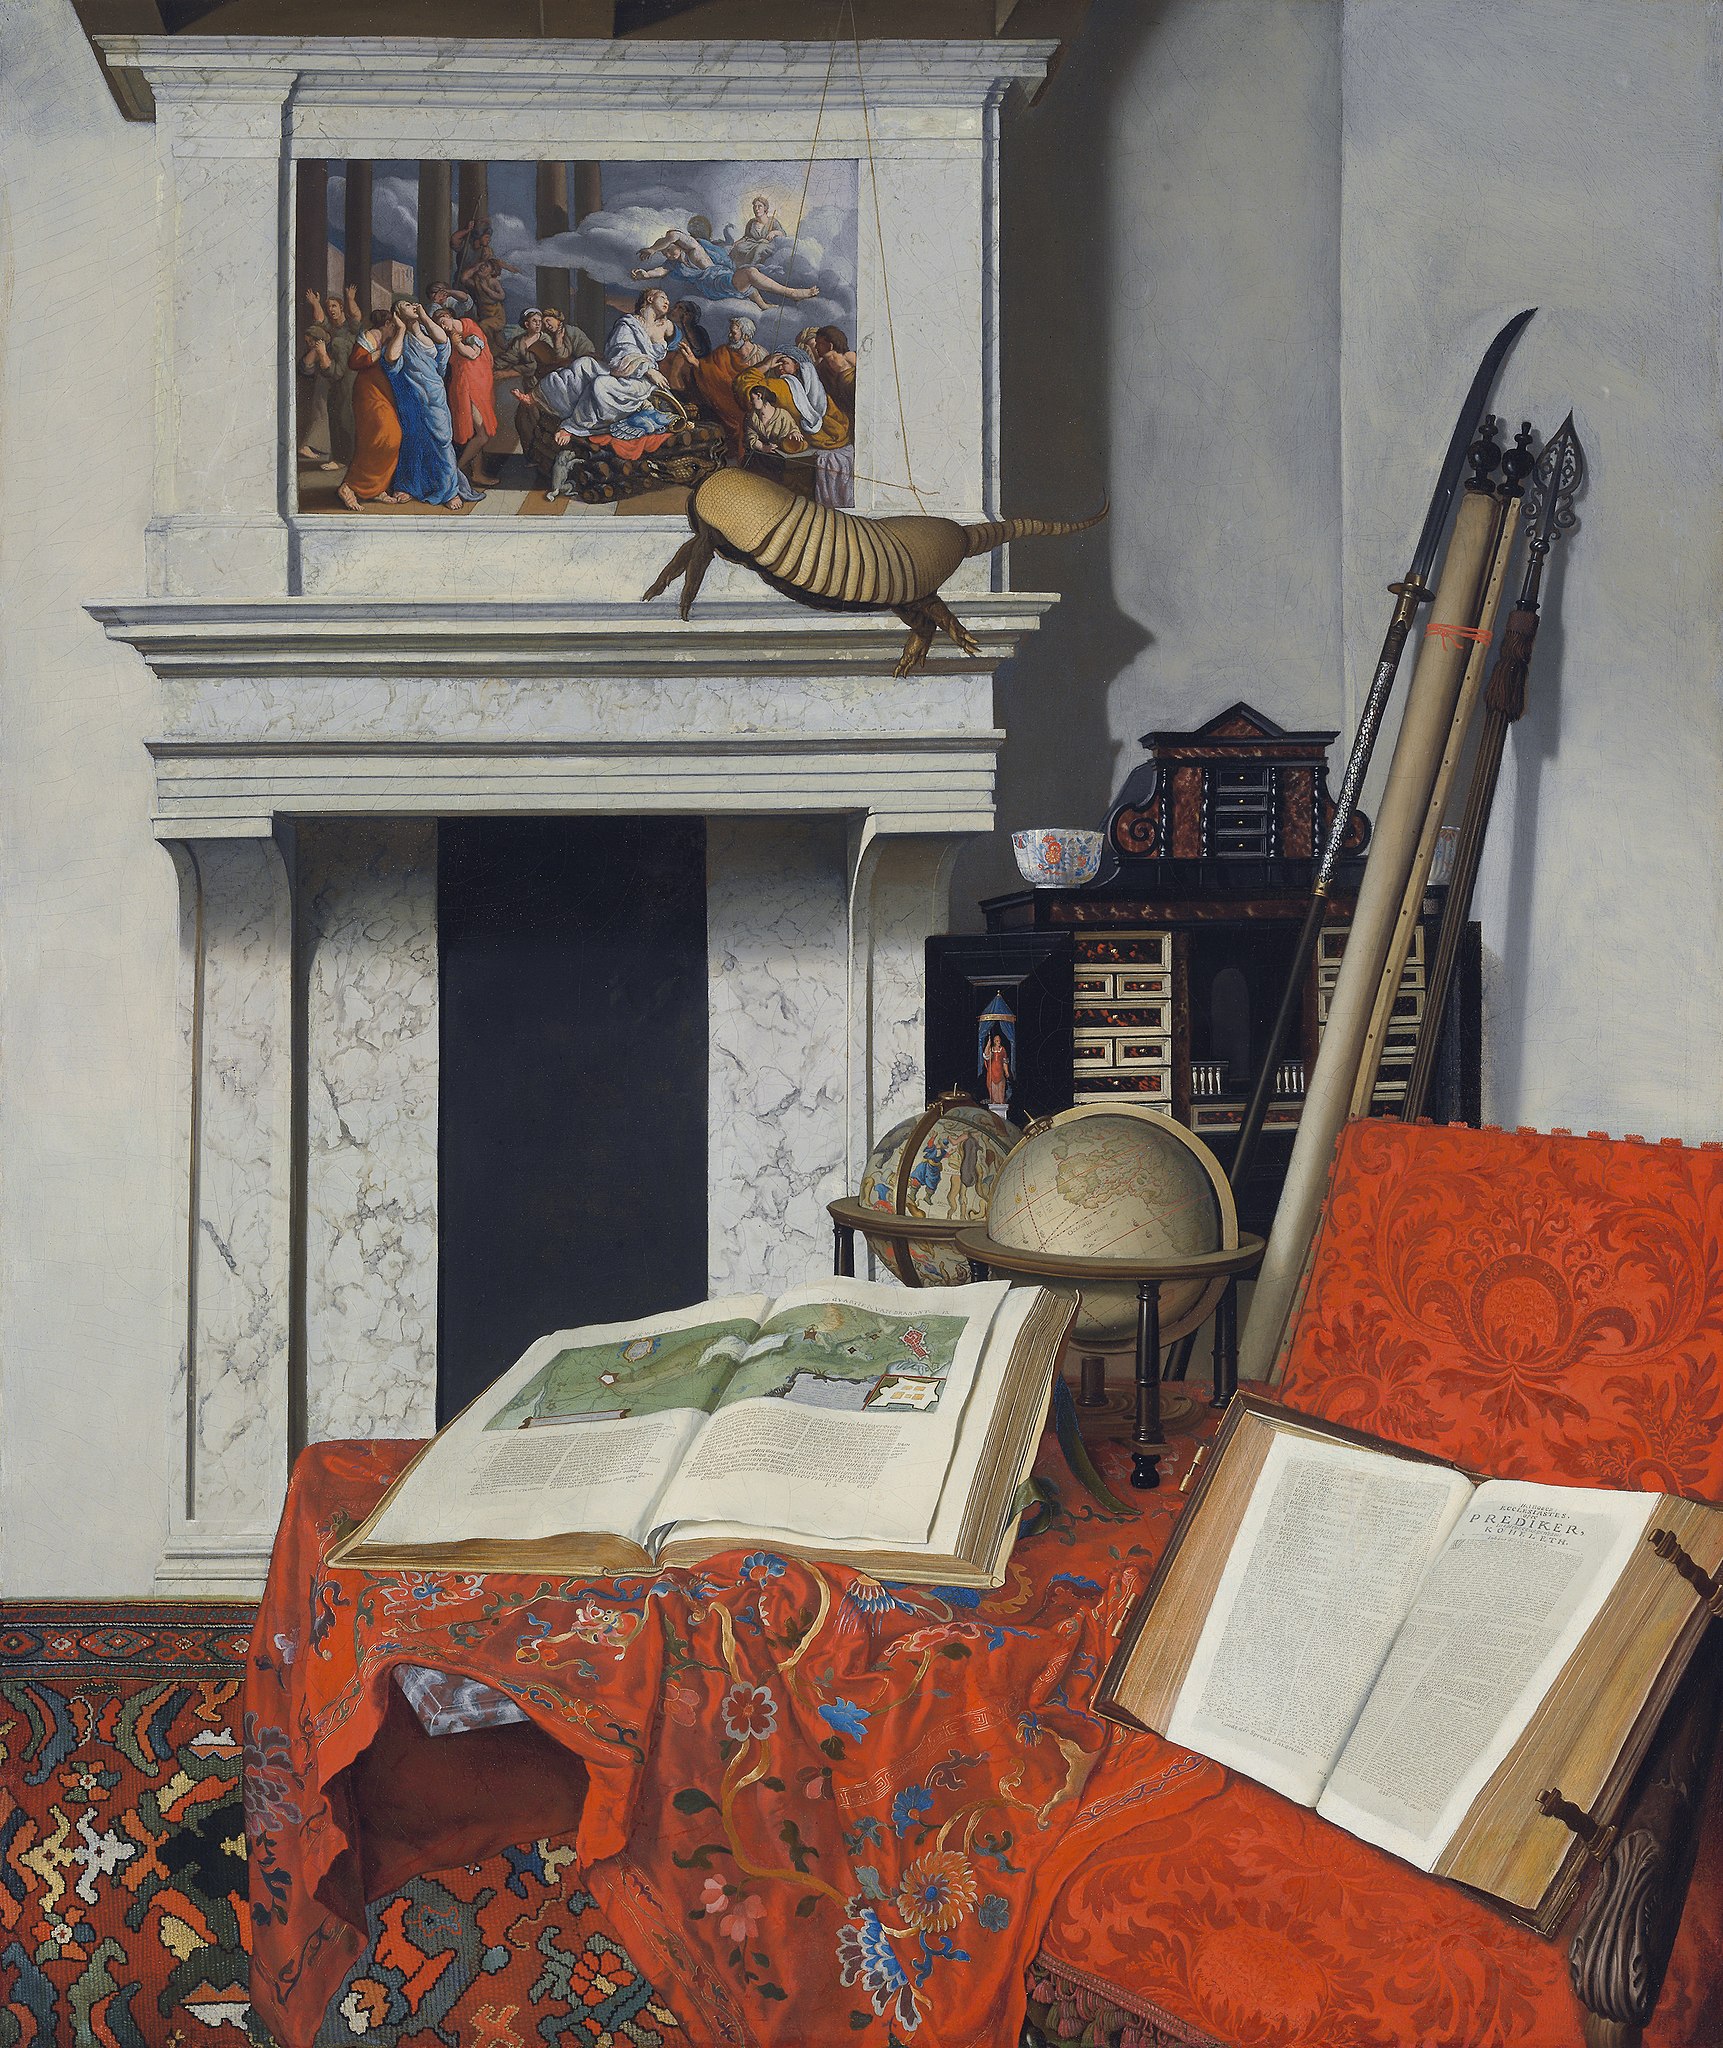 Rincón de habitación con curiosidades by Jan van der Heyden - 1712 - 75 x 63,5 cm Szépművészeti Múzeum